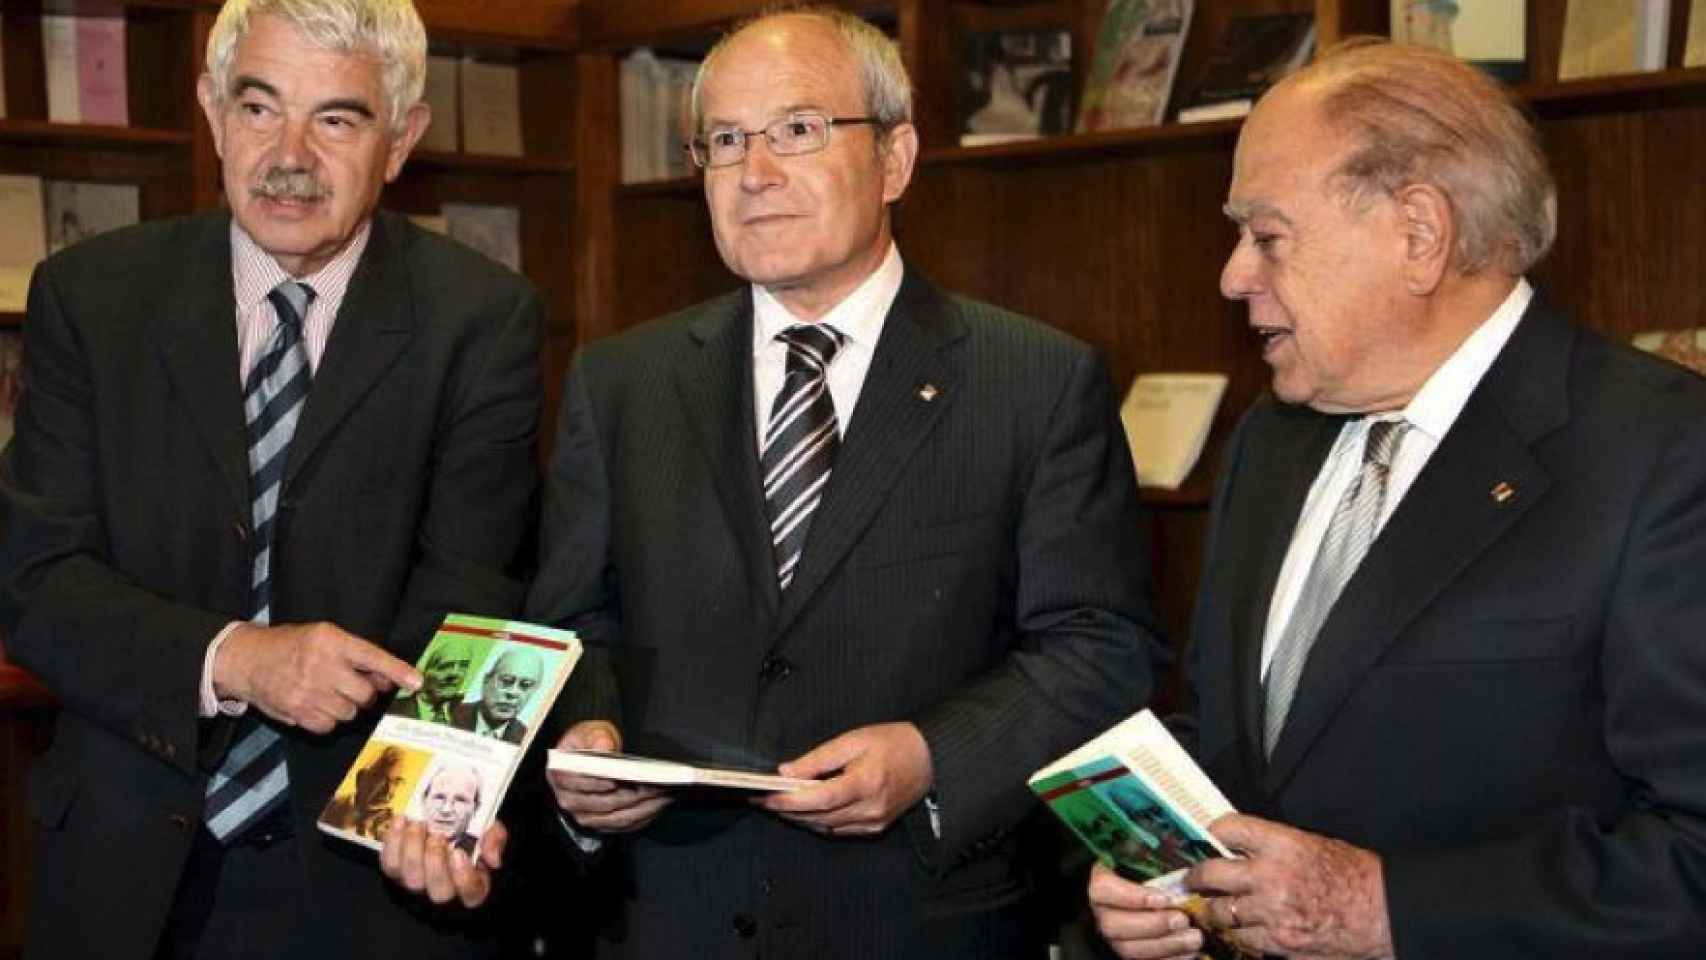 Pasqual Maragall, José Montilla y Jordi Pujol.